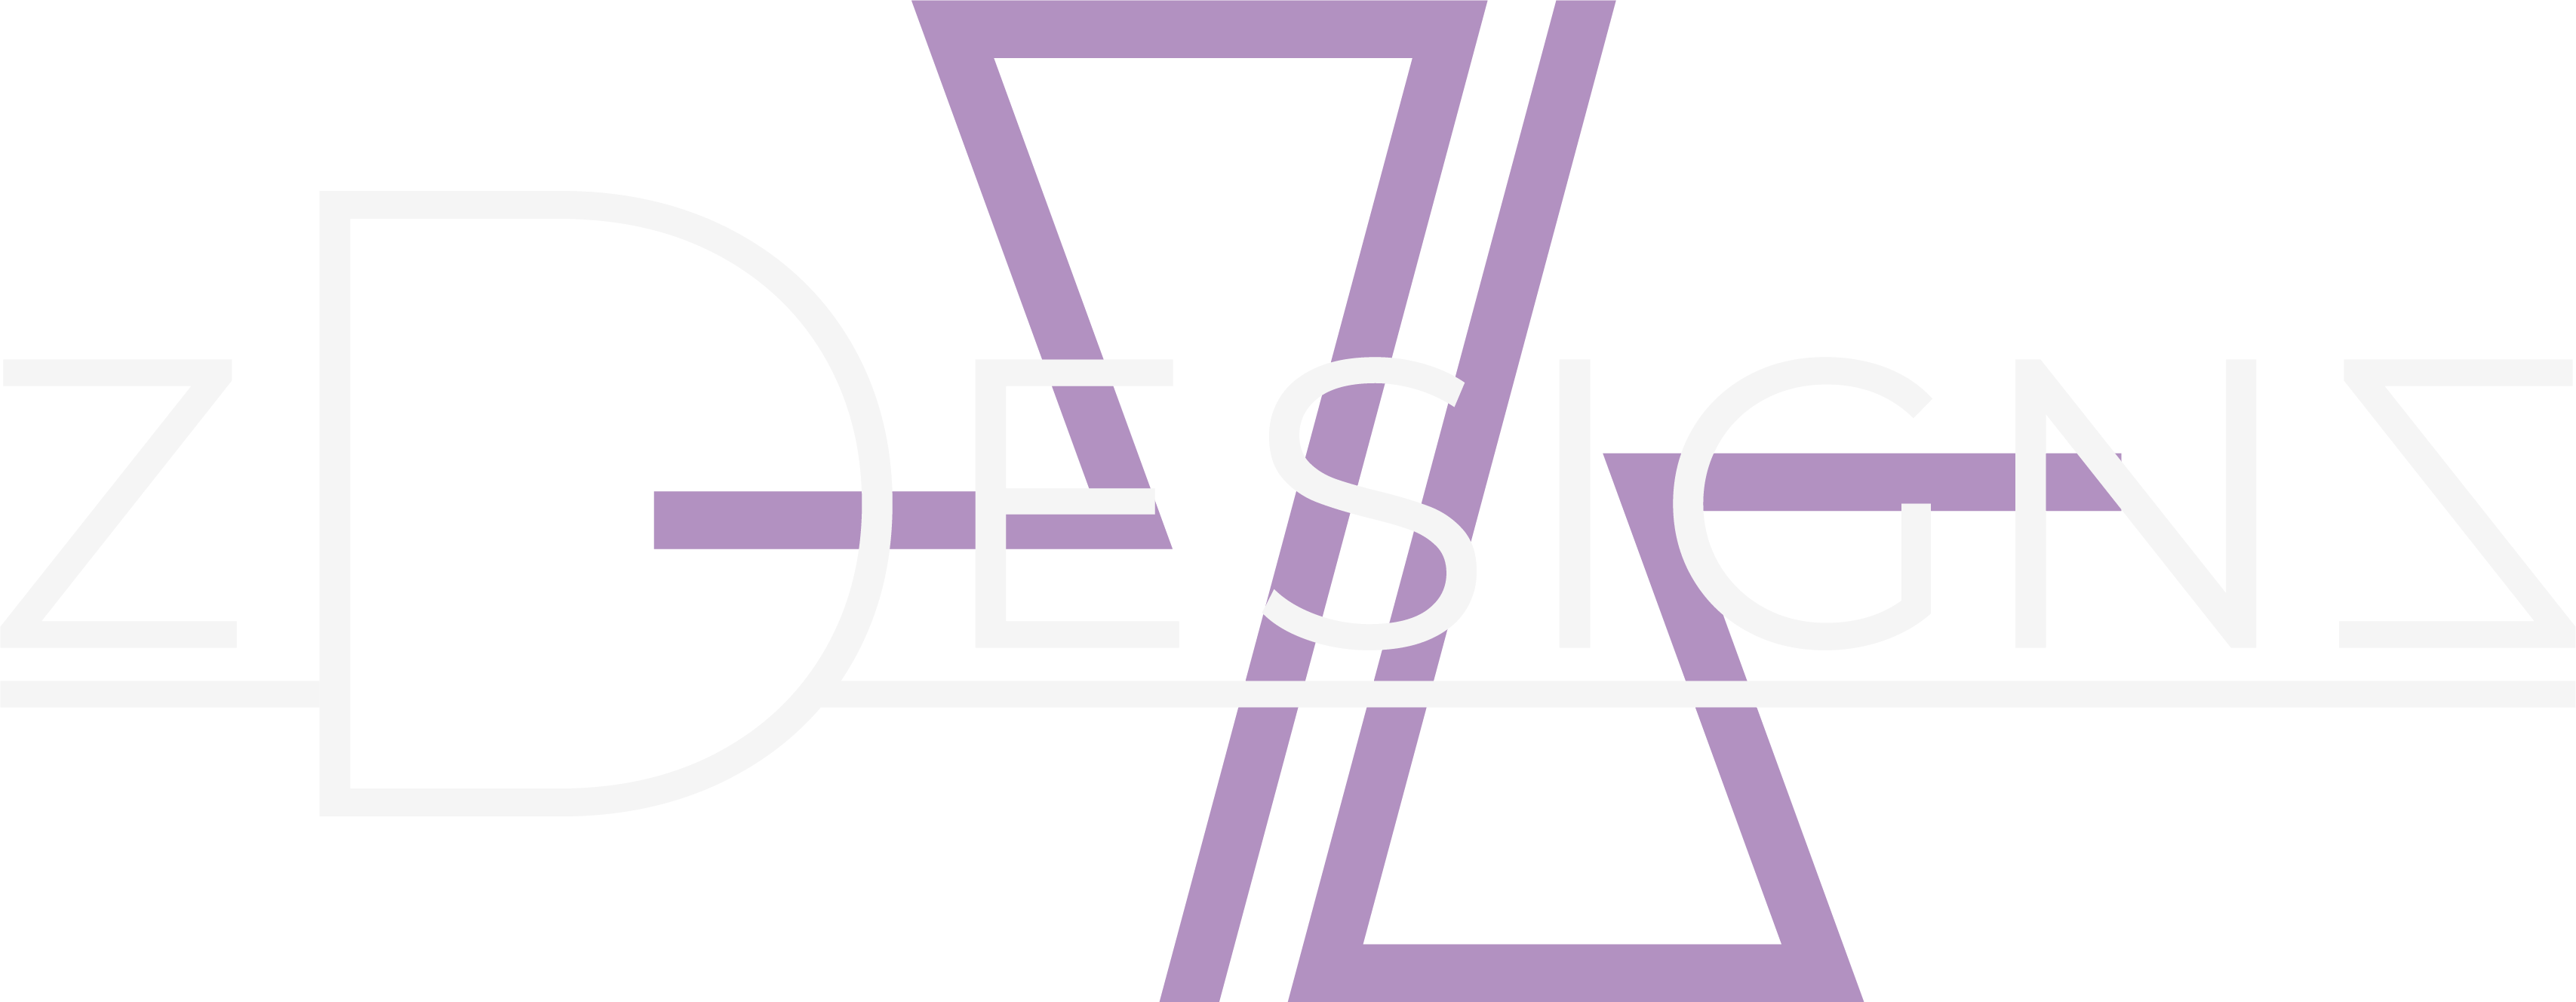 zDesignz White and Purple Logo